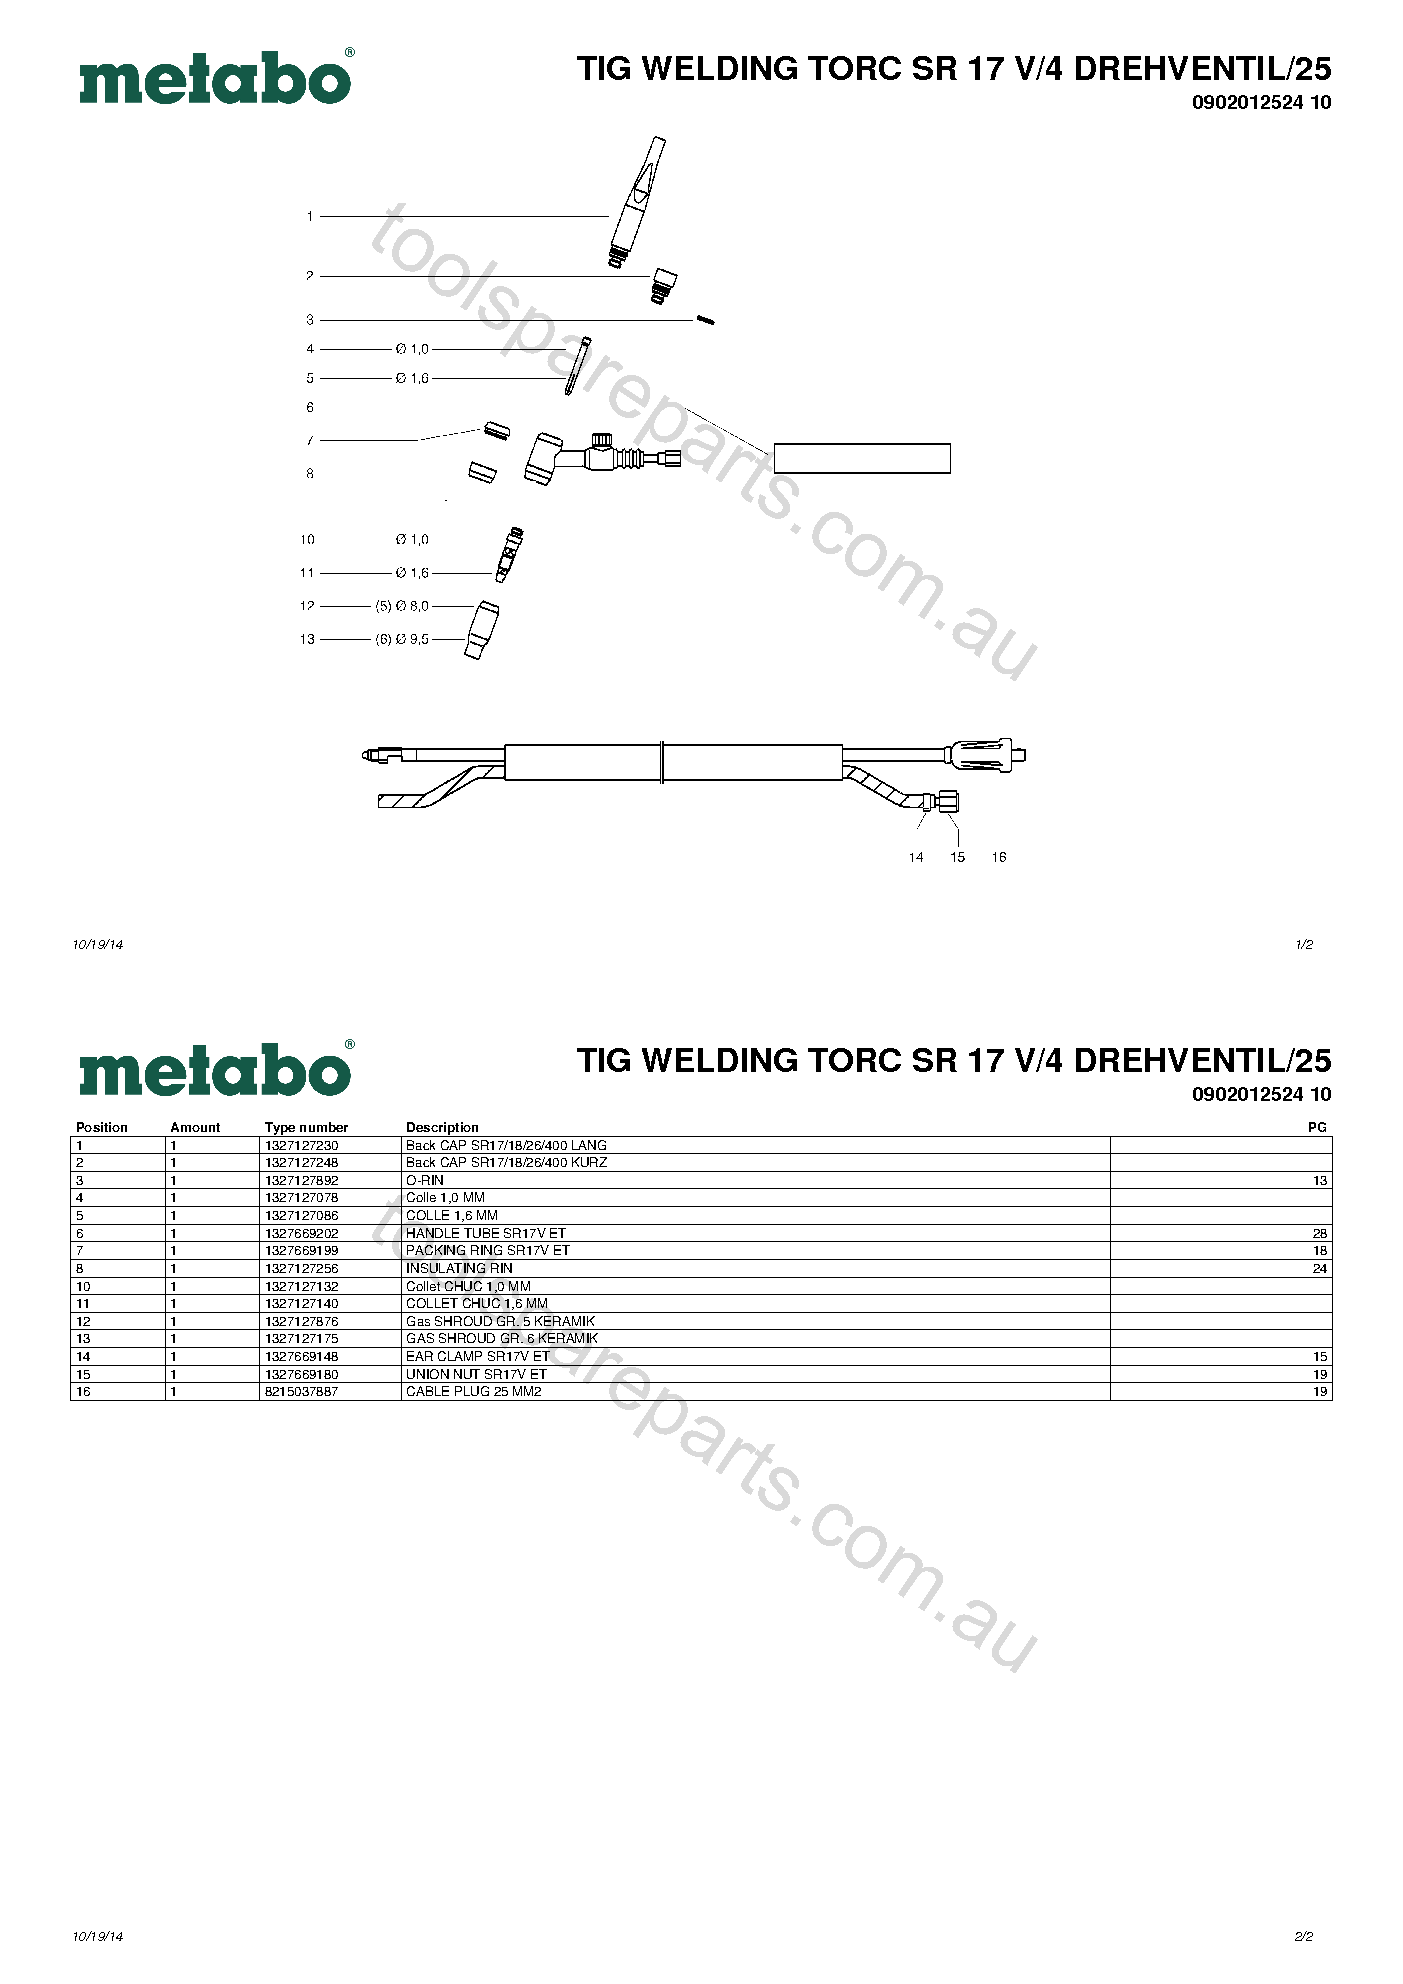 Metabo TIG WELDING TORC SR 17 V/4 DREHVENTIL/25 0902012524 10  Diagram 1